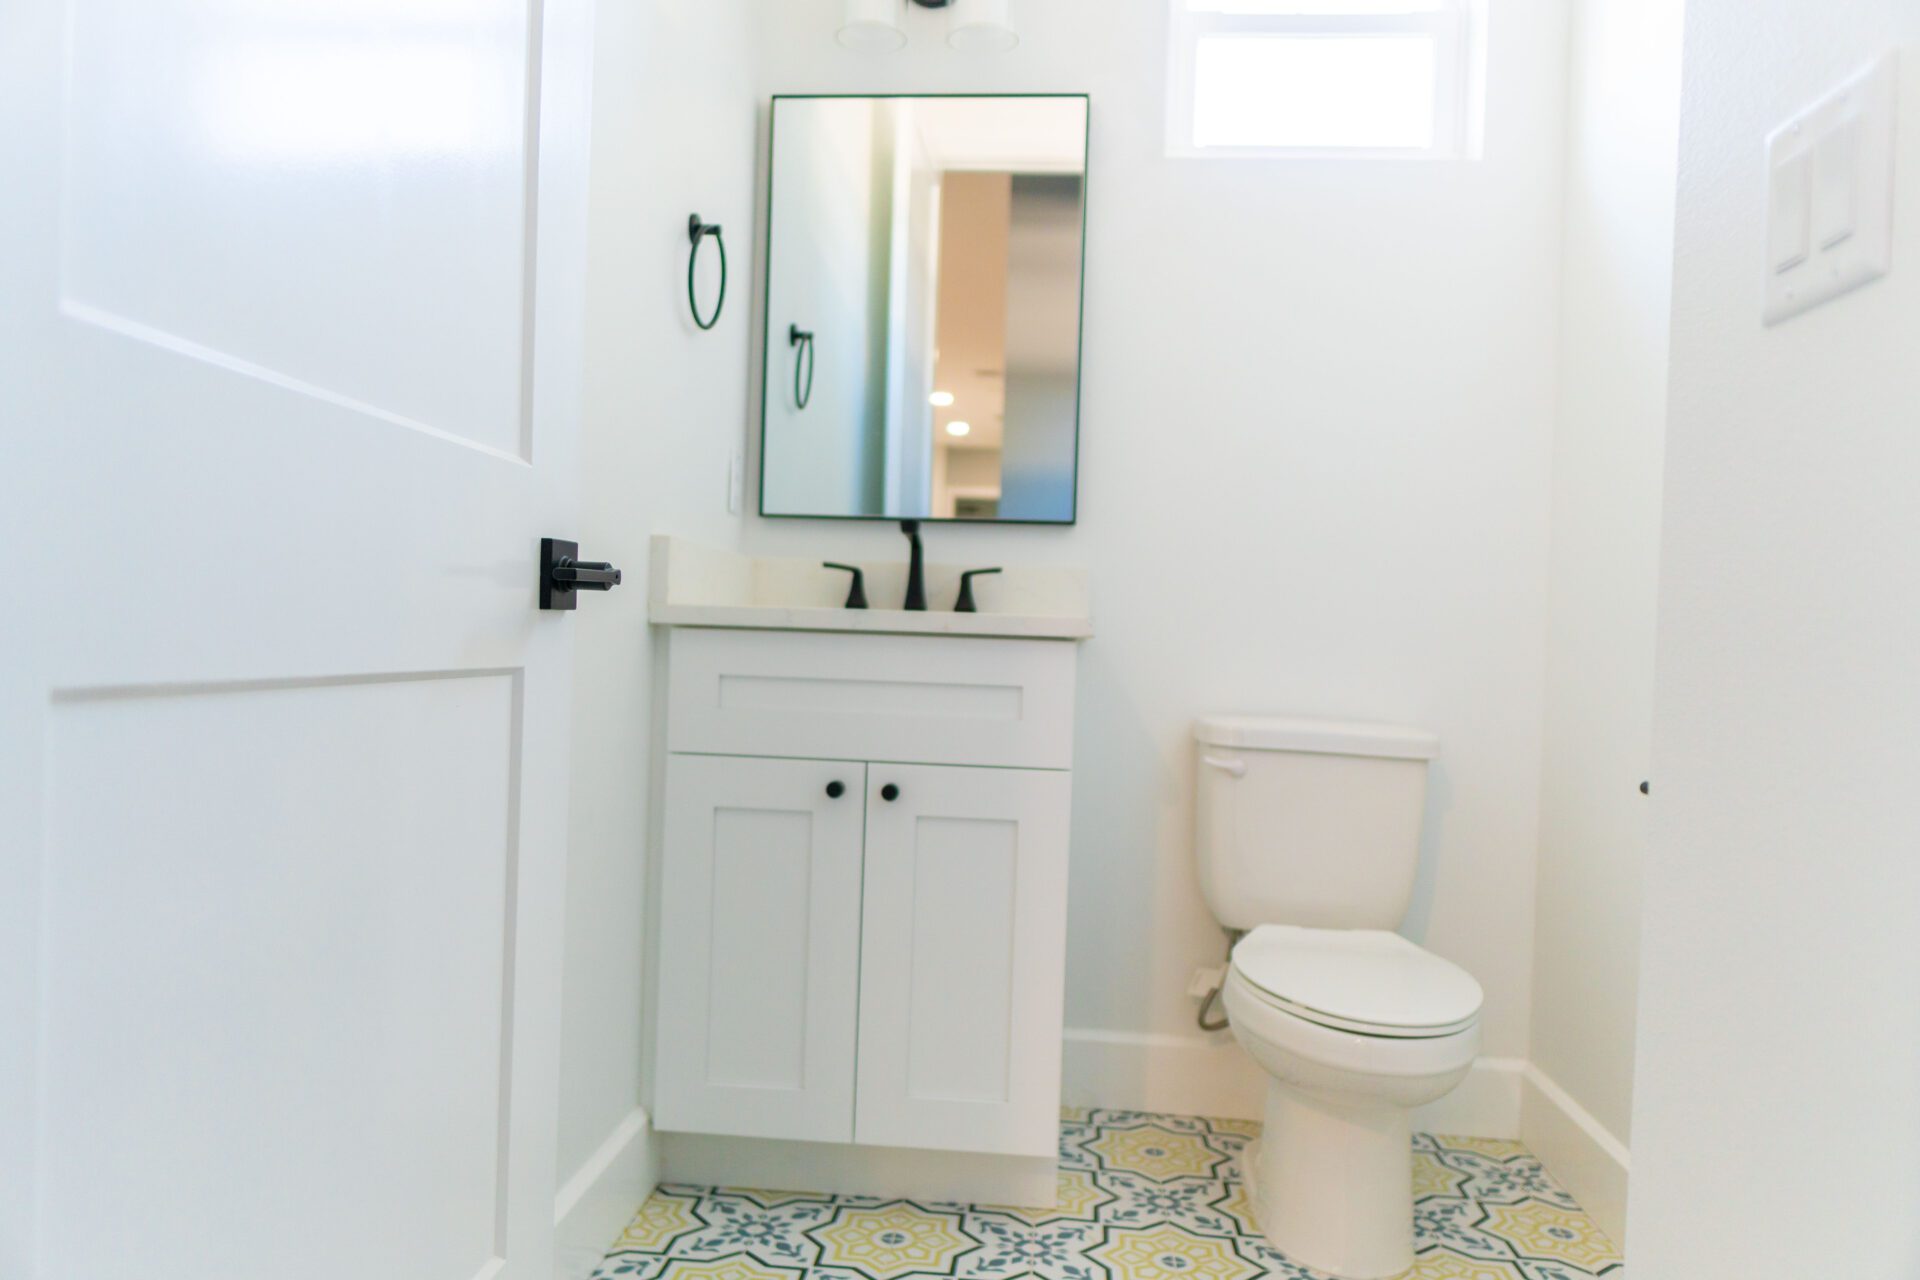 A washroom with mirror